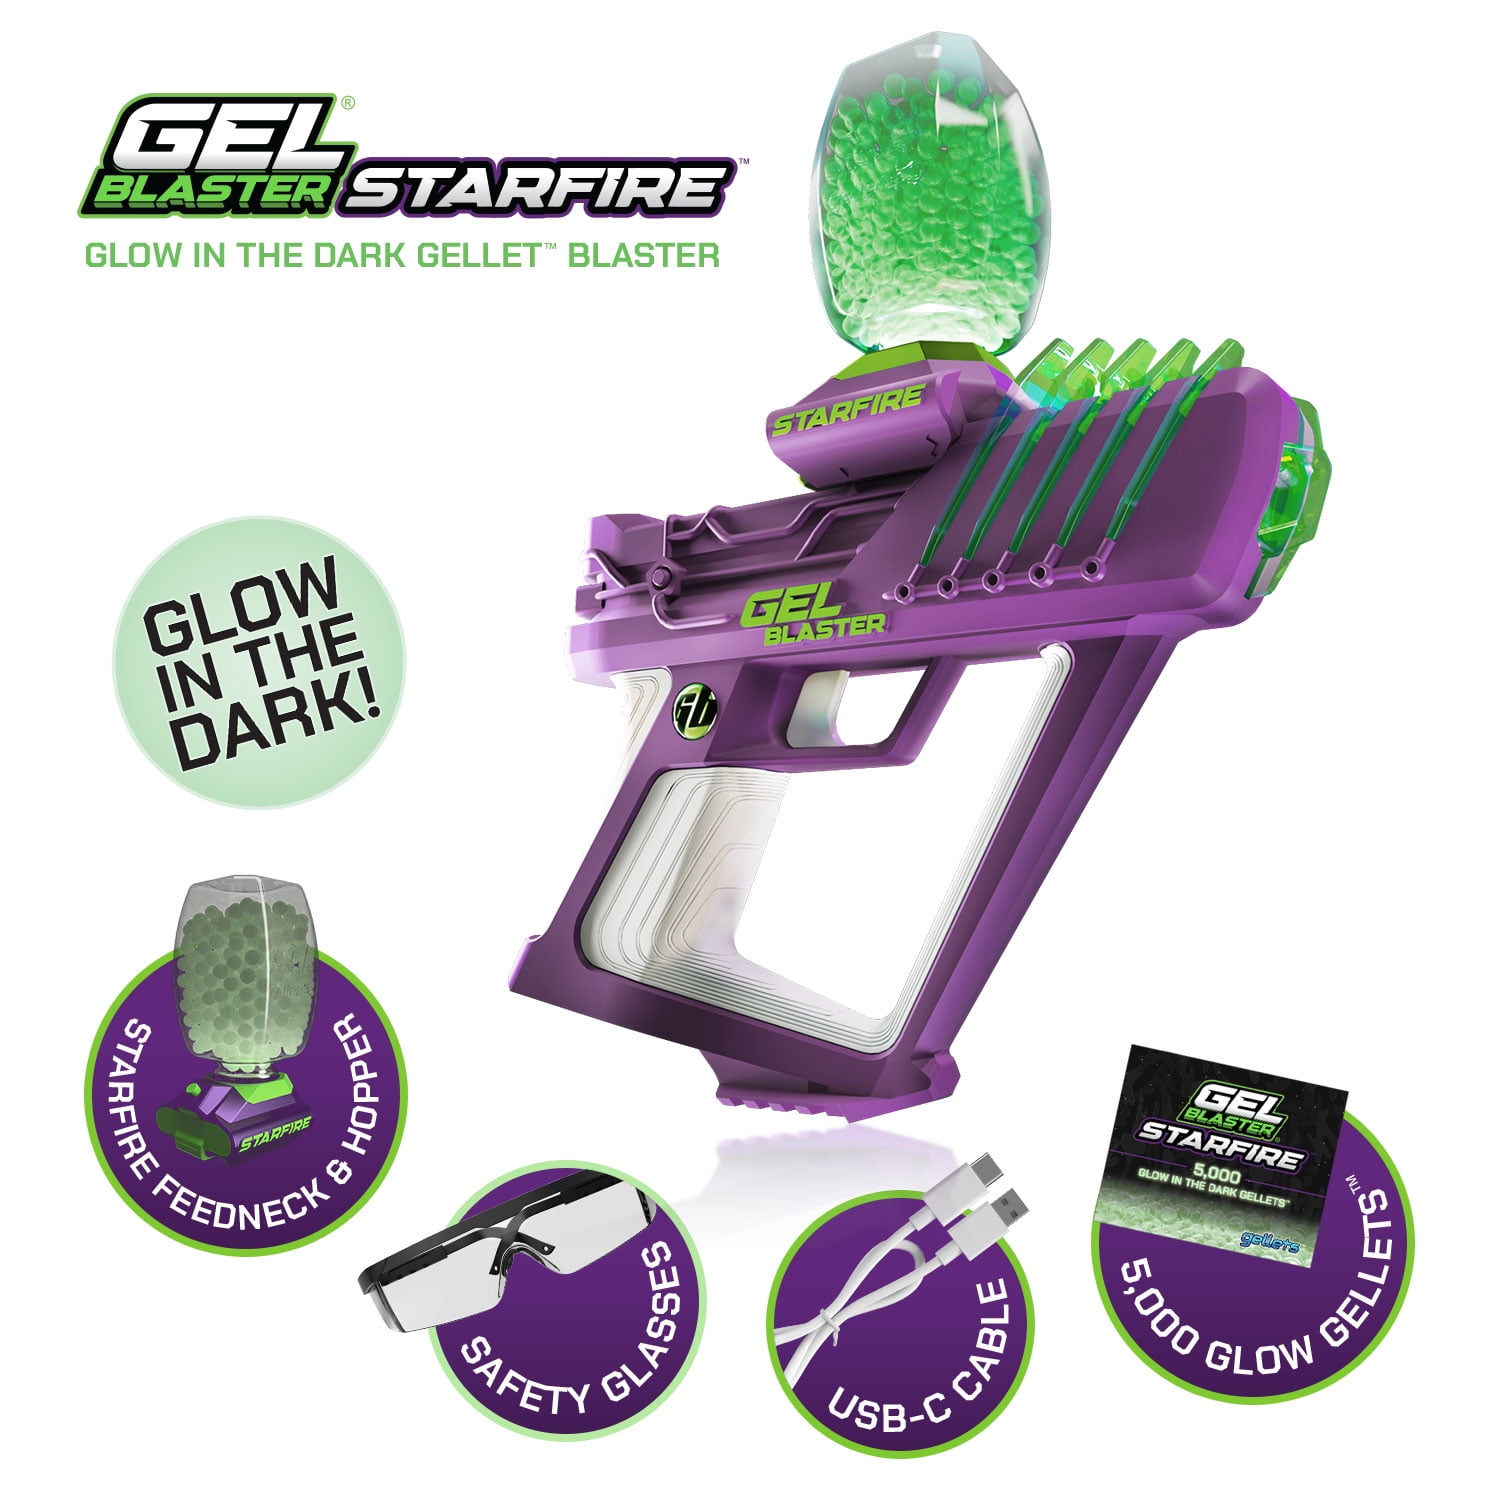 Gel Blaster STARFIRE, Glow-in-the-Dark Gellet Blaster, with 5,000 Starfire Glow-in-the-Dark Gellets